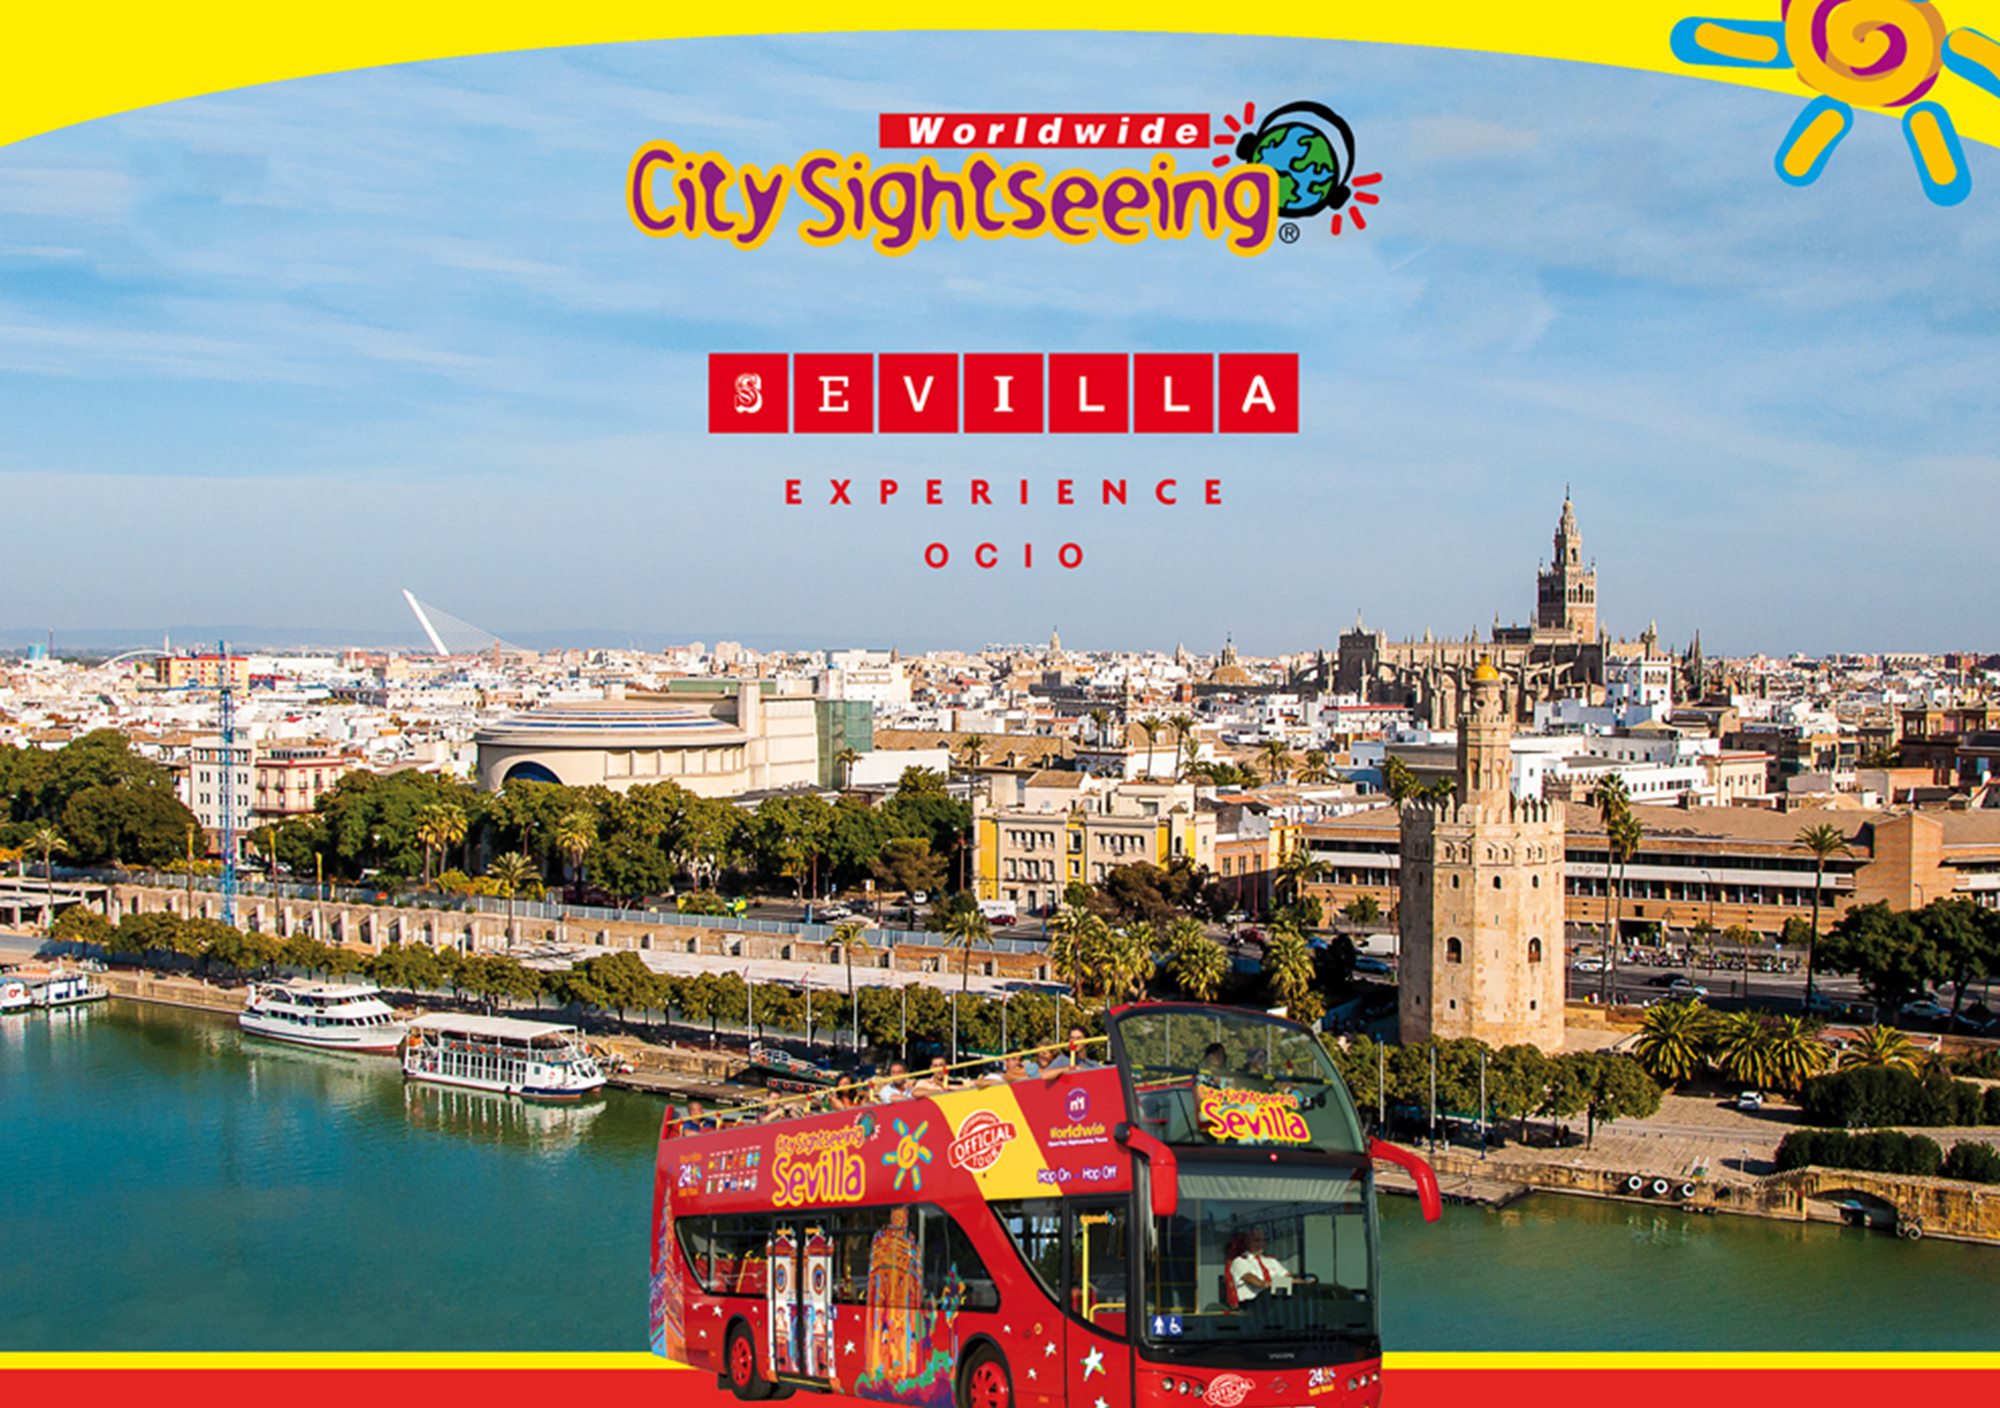 réserver acheter billets en ligne tours visits Pass City Sightseeing Sevilla Experience